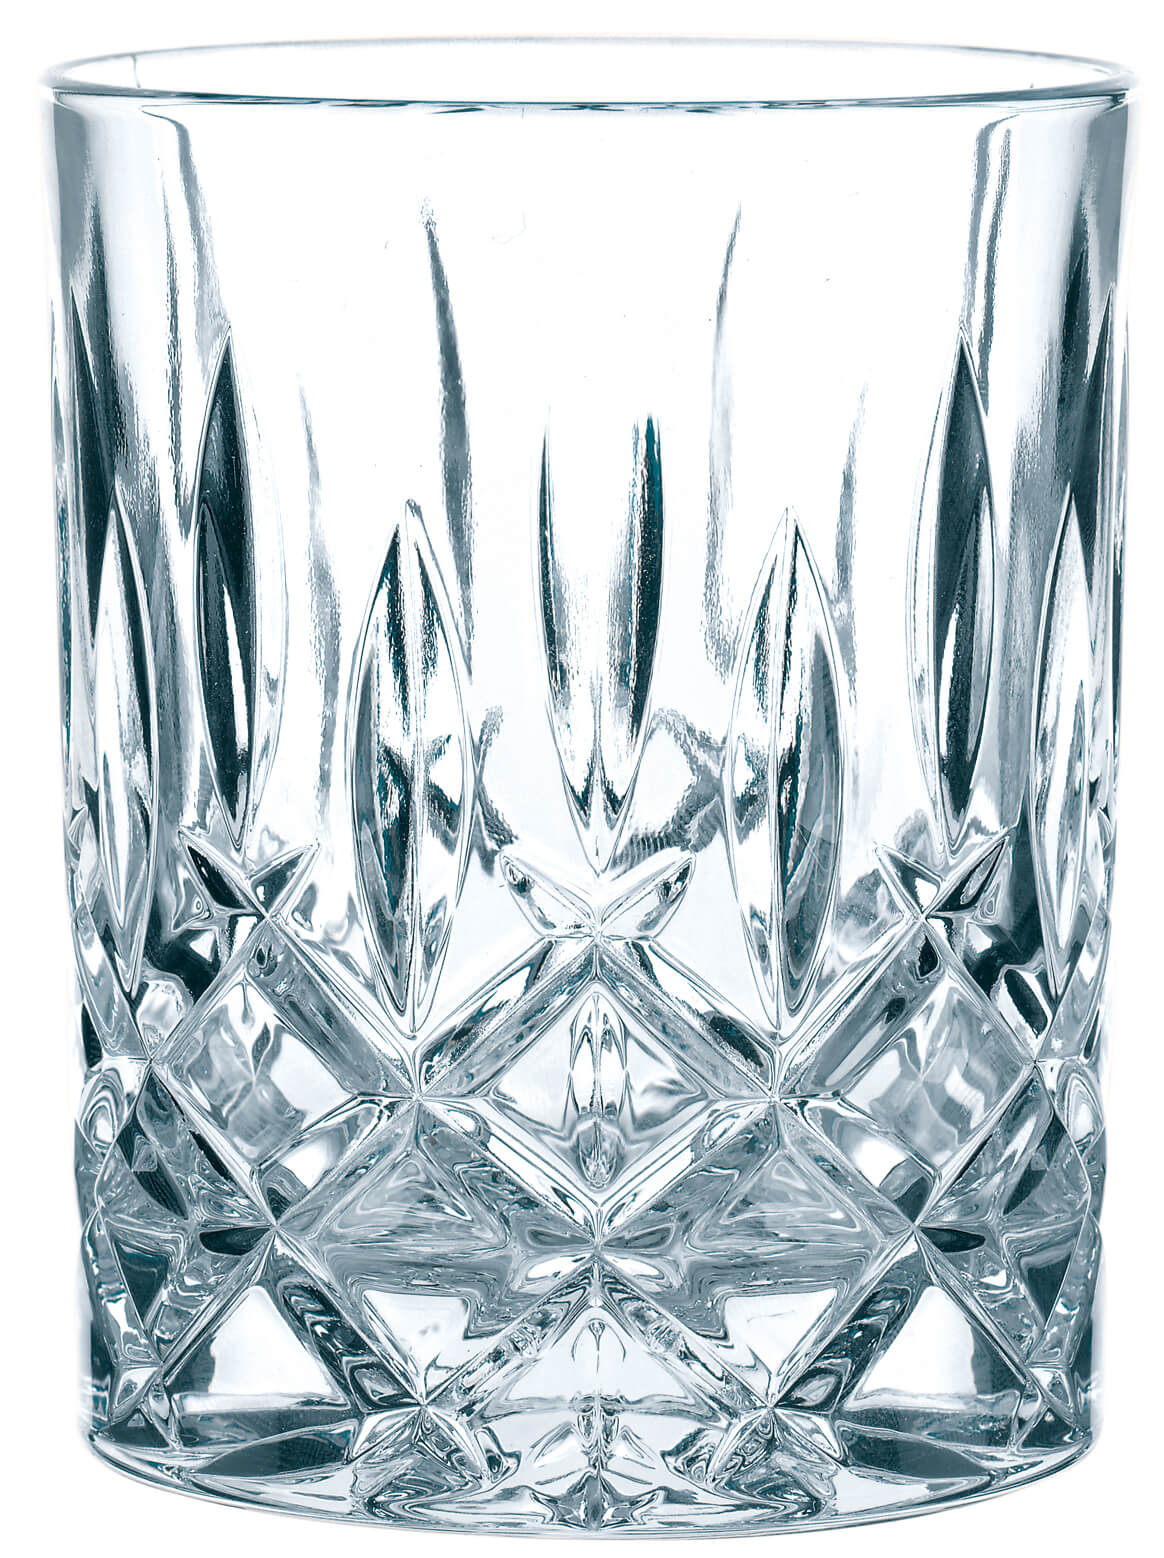 Whiskyglas Noblesse, Nachtmann - 300ml (1 Stk.)